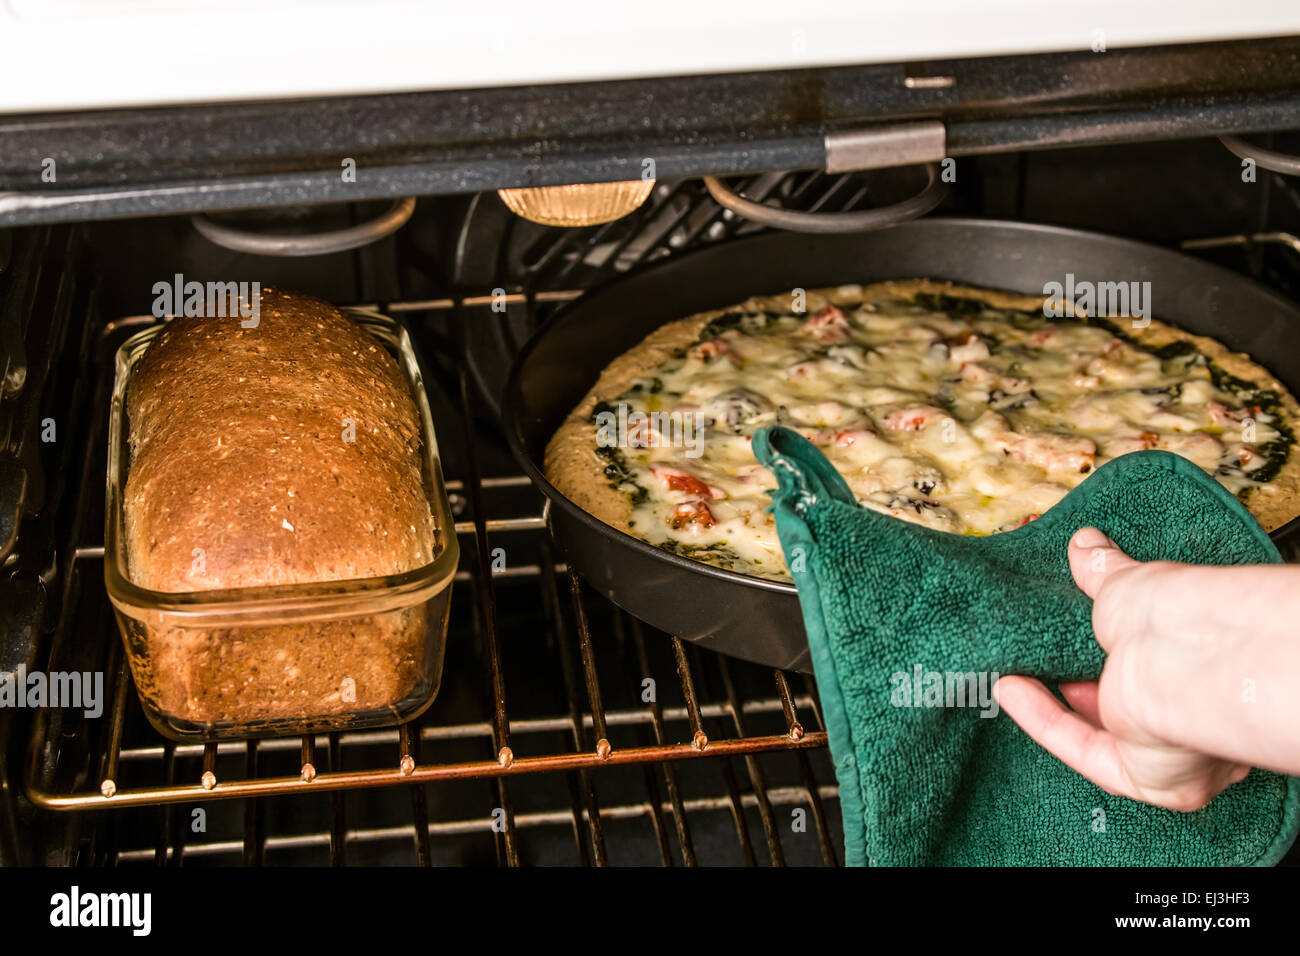 Vegetariano, pesto, multi-grano, spessa crosta di pizza la cottura in forno insieme con un multi-granella della pagnotta di pane fatto con lo stesso Foto Stock